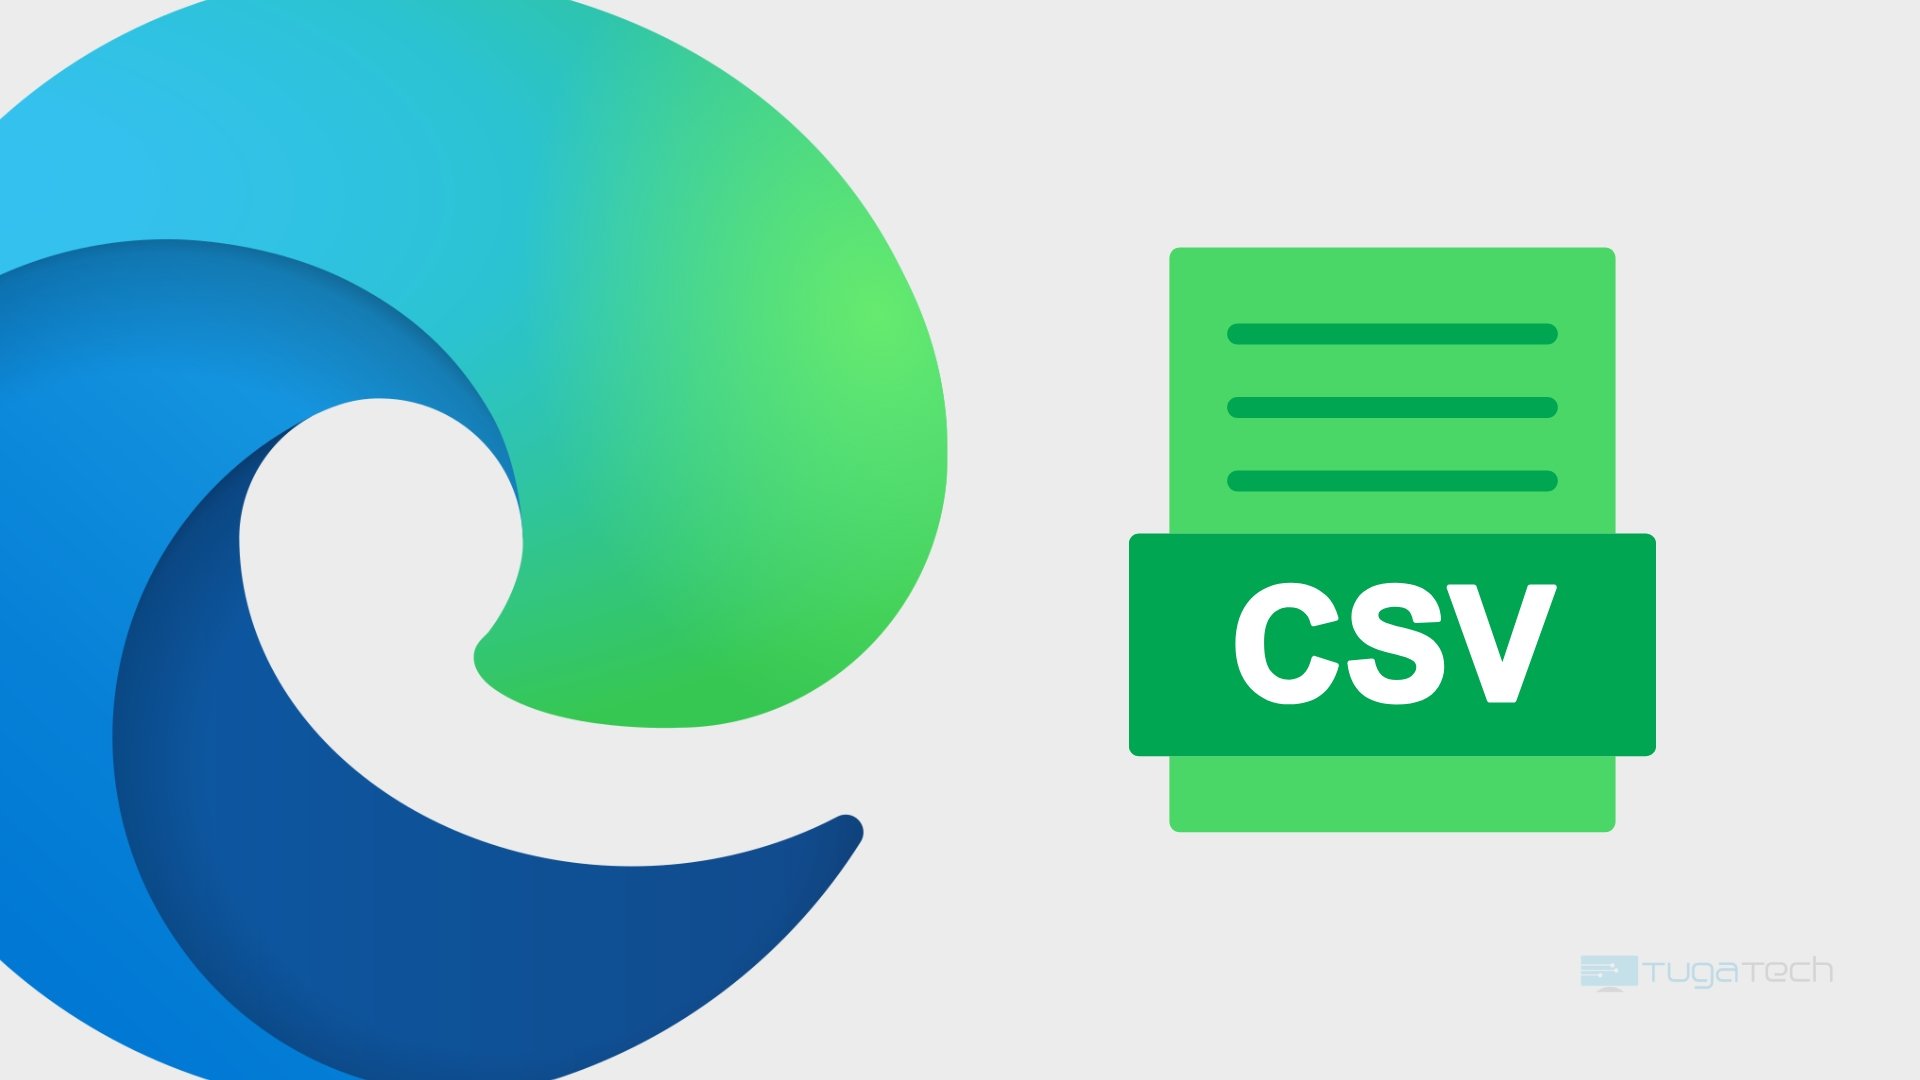 Edge agora permite exportar histórico de navegação em CSV